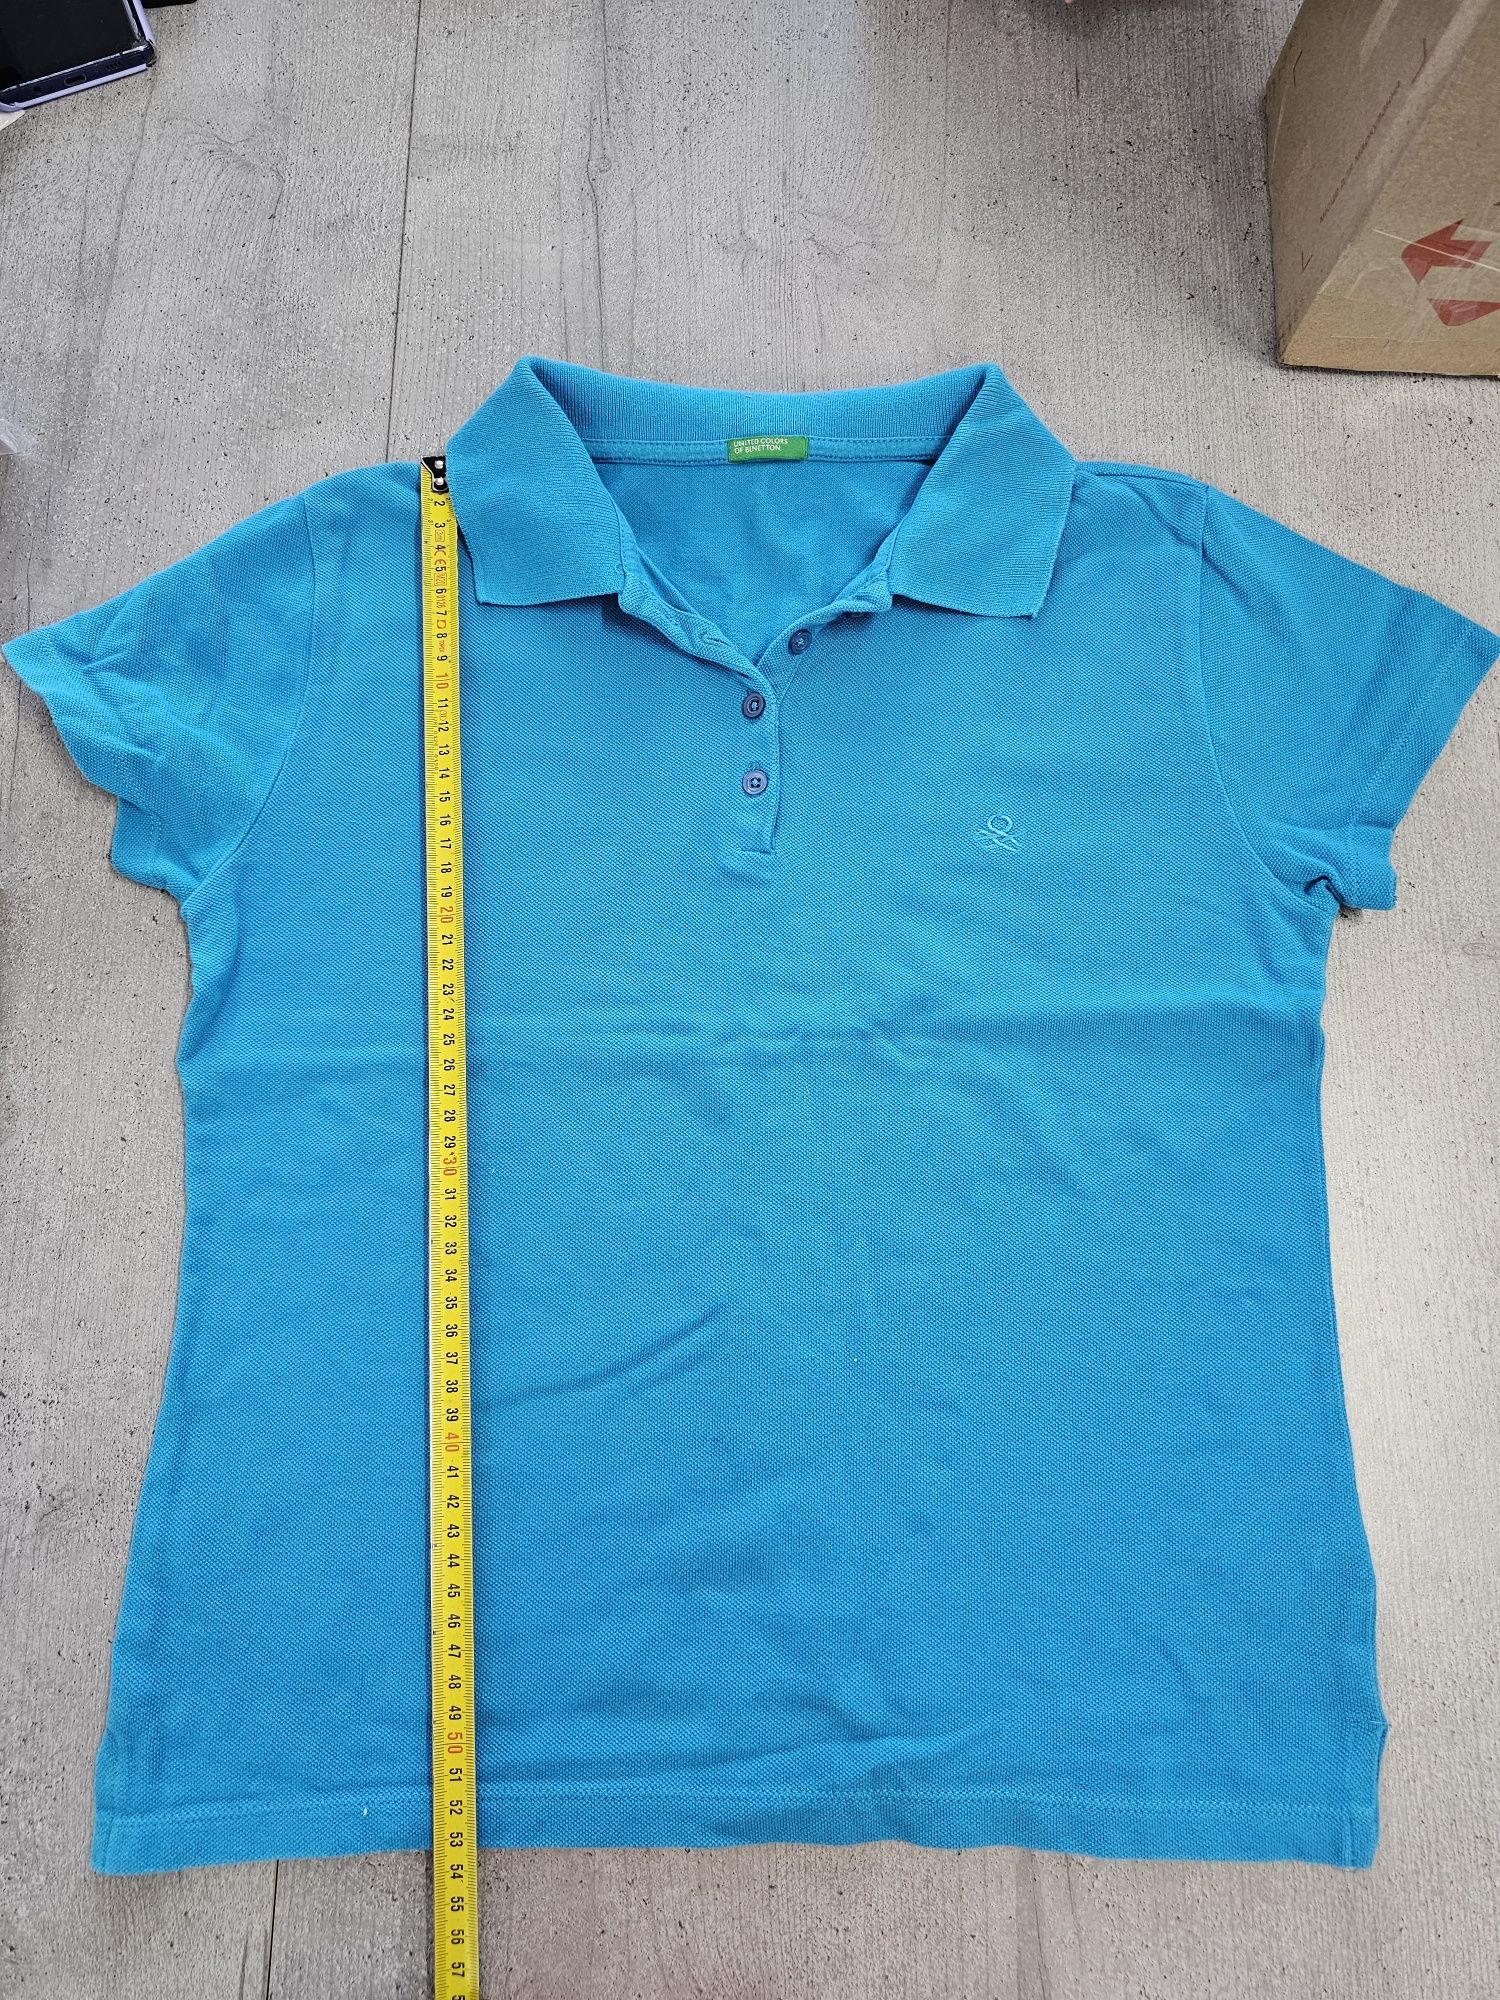 Поло, футболка United Colors of Benetton, женское М